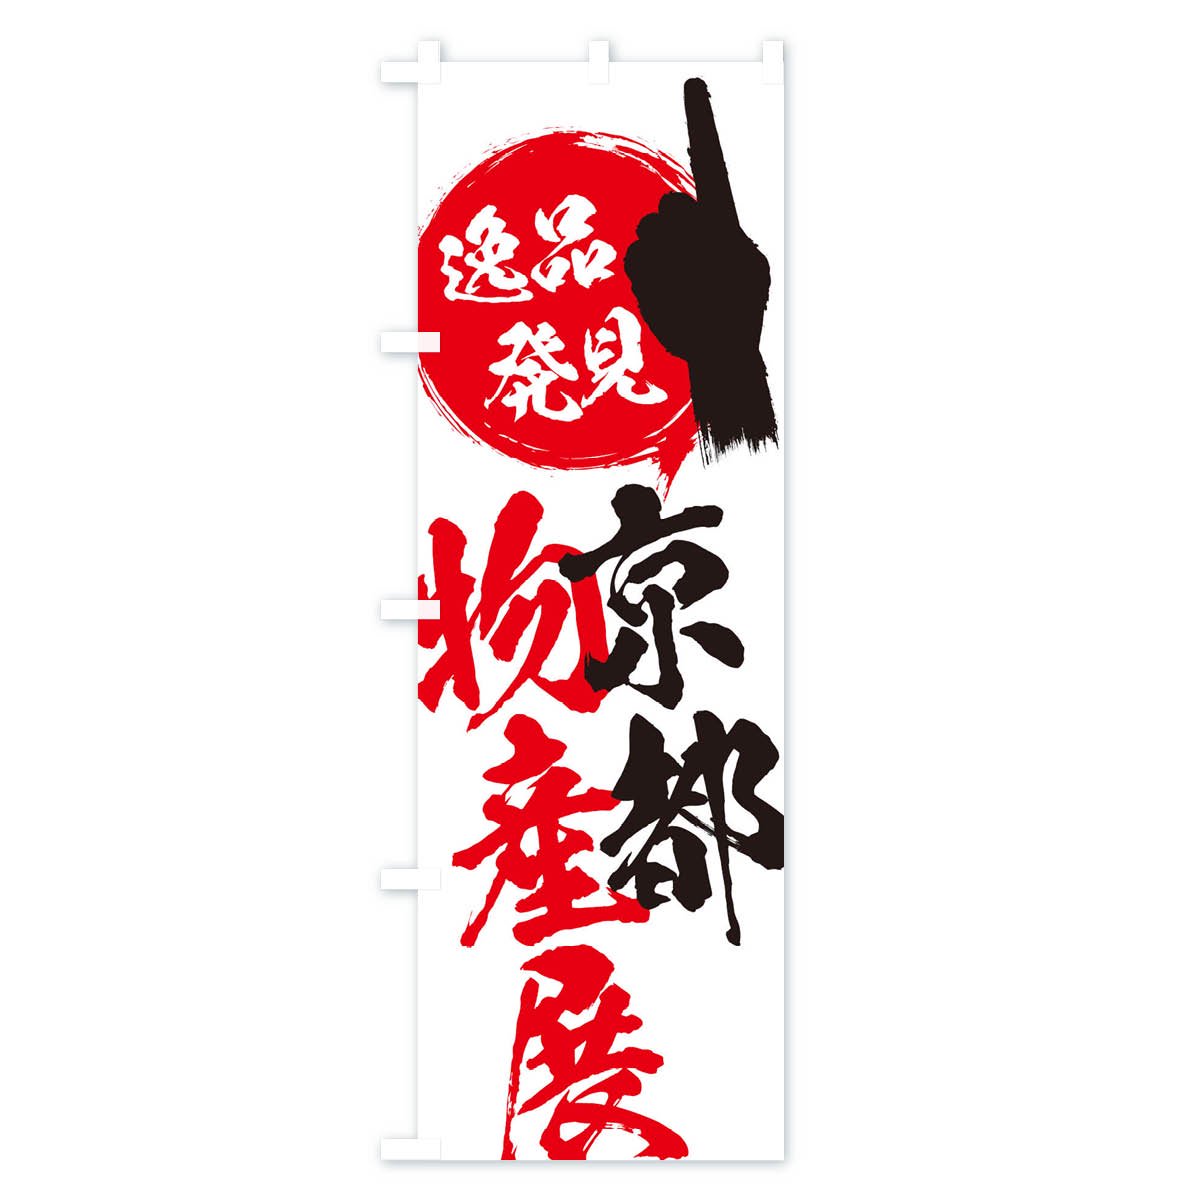 のぼり旗 2枚セット 京都物産展 (紫) BU-1047 - 店舗用品